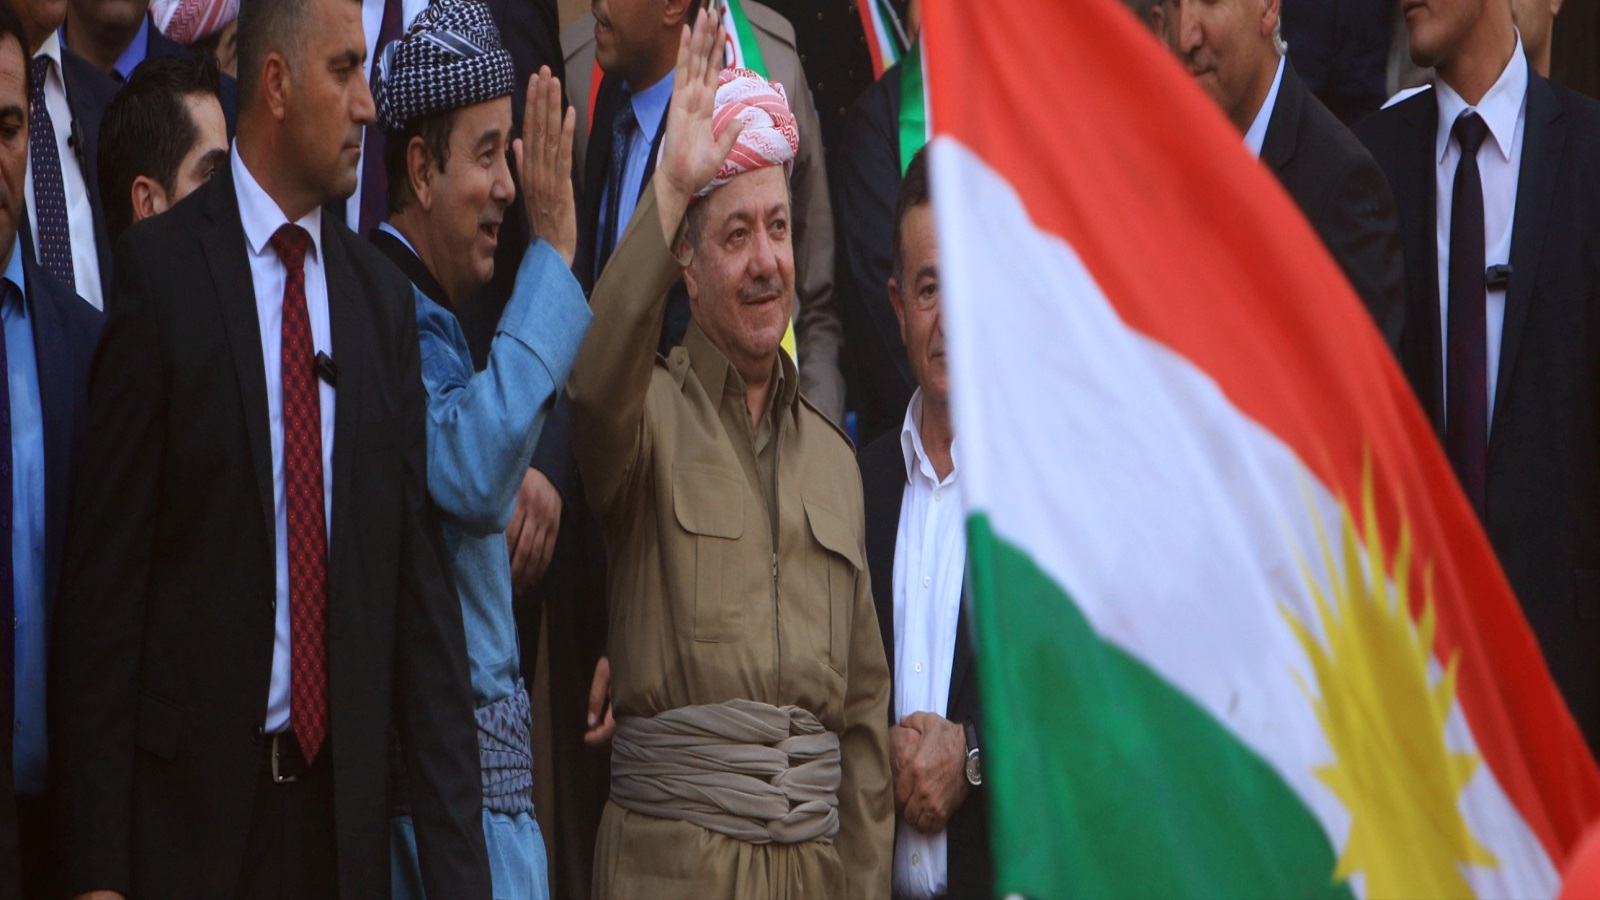  مسعود برزاني رئيس إقليم كردستان العراق، وكان قد تولى الحكم في 1992 (رويترز)